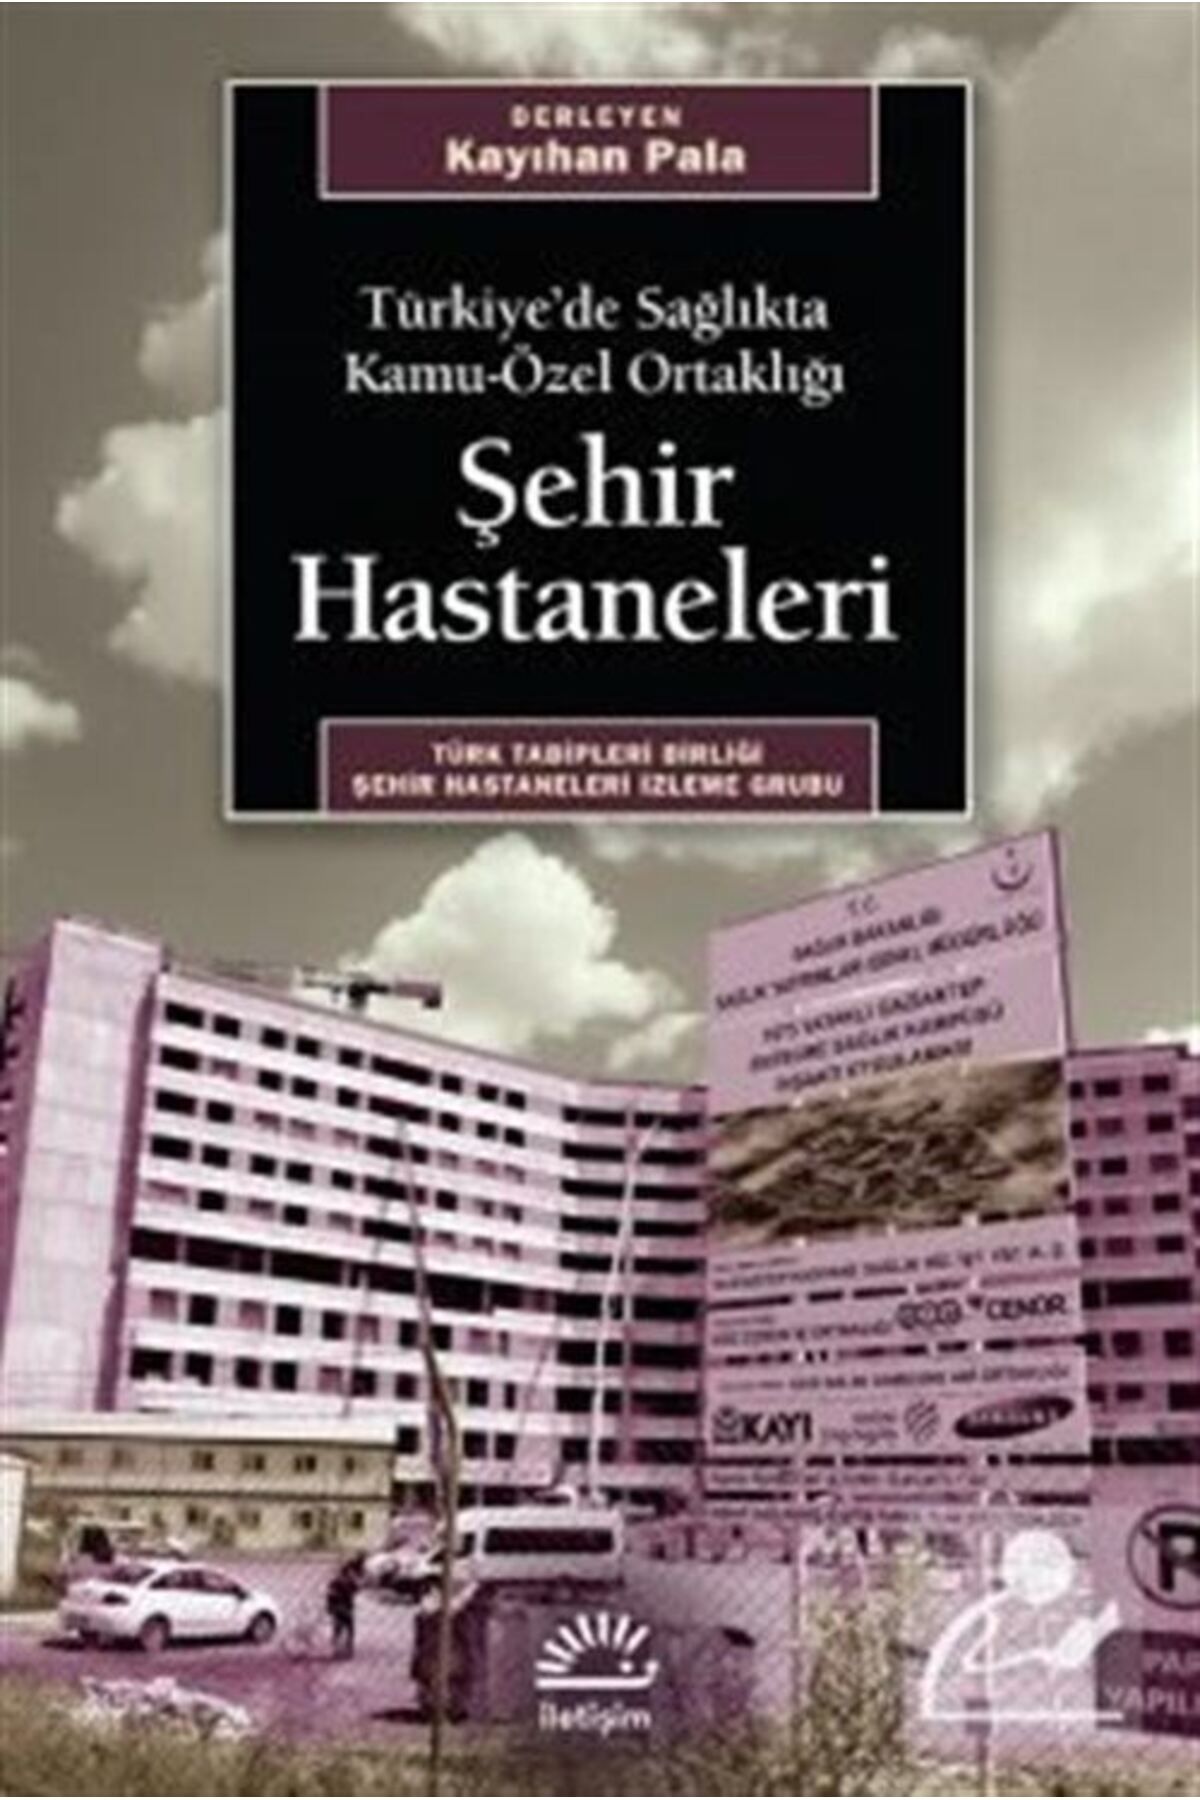 İletişim Yayınları Şehir Hastaneleri & Türkiye'de Sağlıkta Kamu-özel Ortaklığı